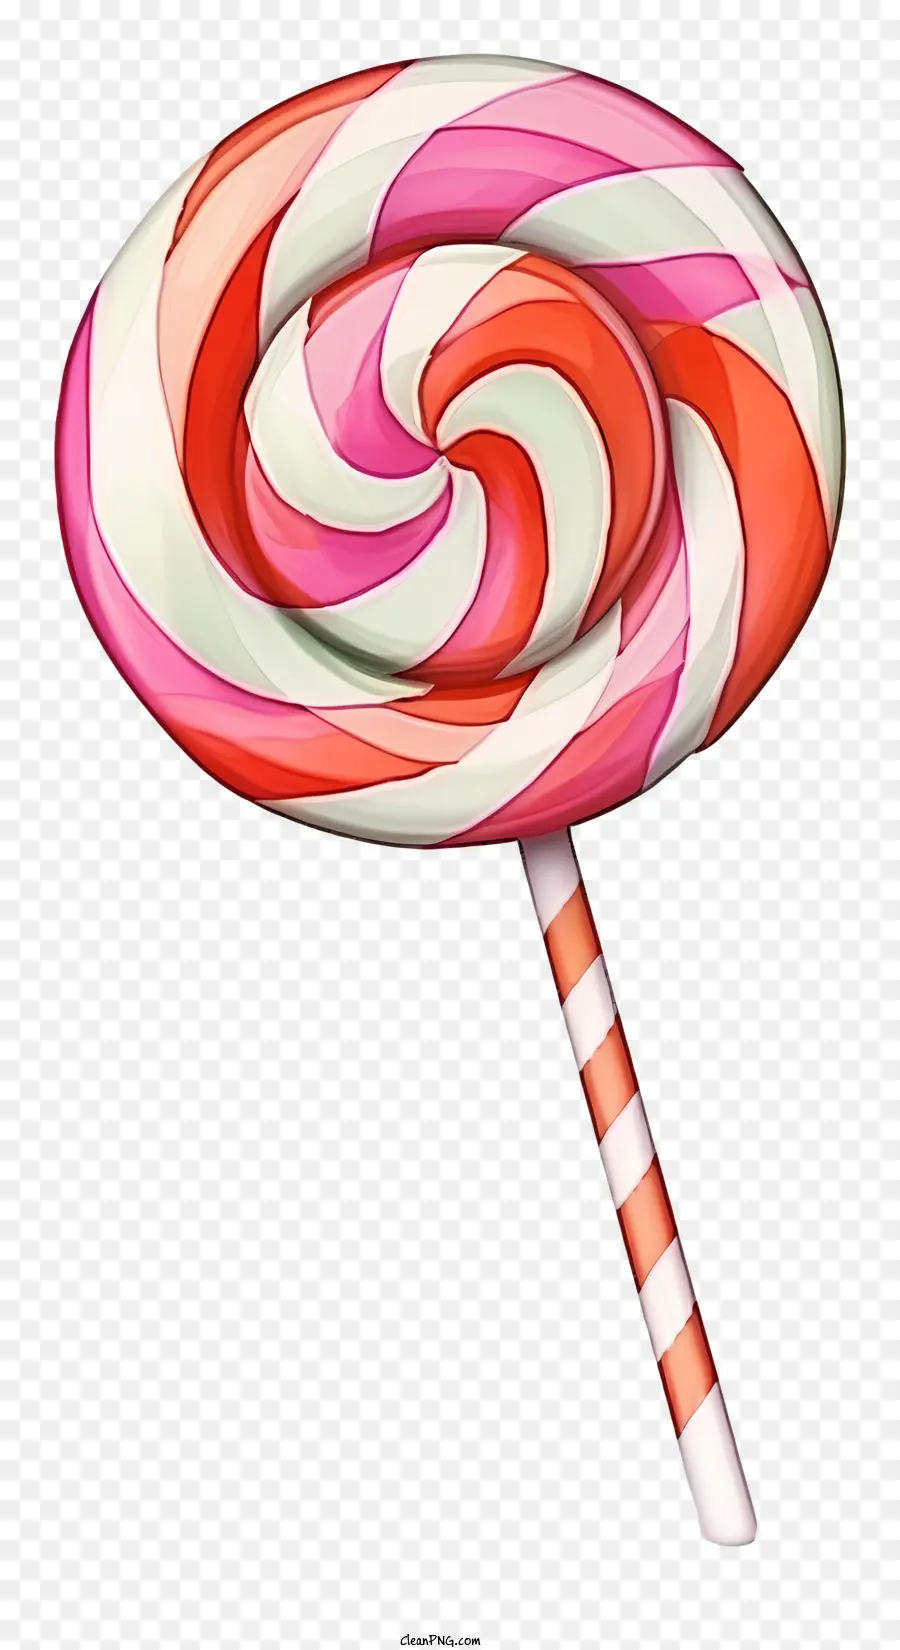 Lollipop Candy Red White Pink - Lollipop colorato con paglia, caramelle ed effetto 3D